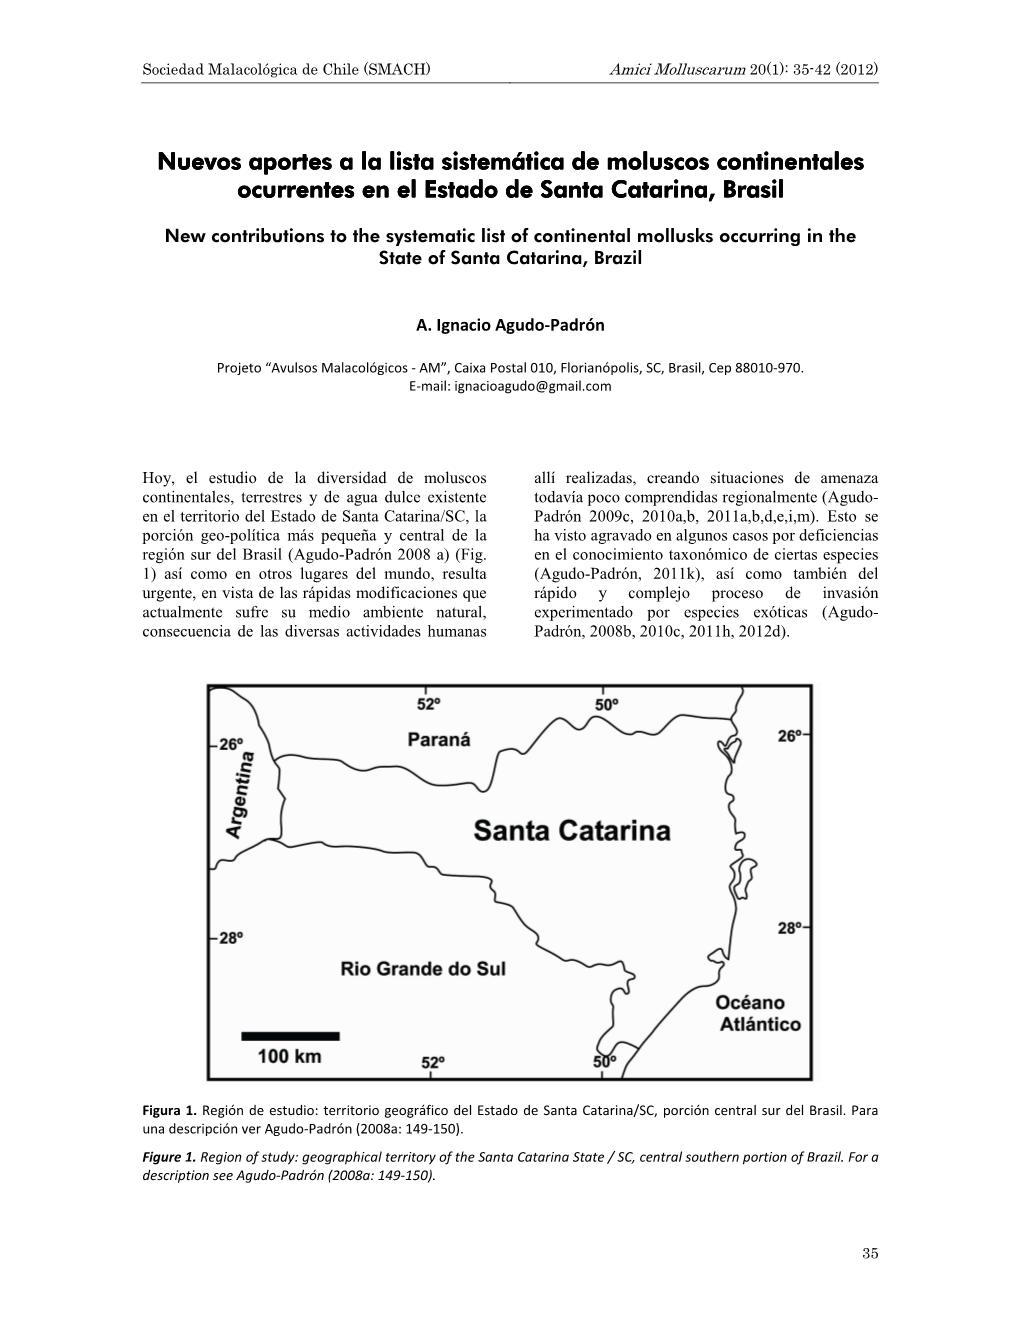 Nuevos Aportes a La Lista Sistemática De Moluscos Continentales Ocurrentes En El Estado De Santa Catarina, Brasil